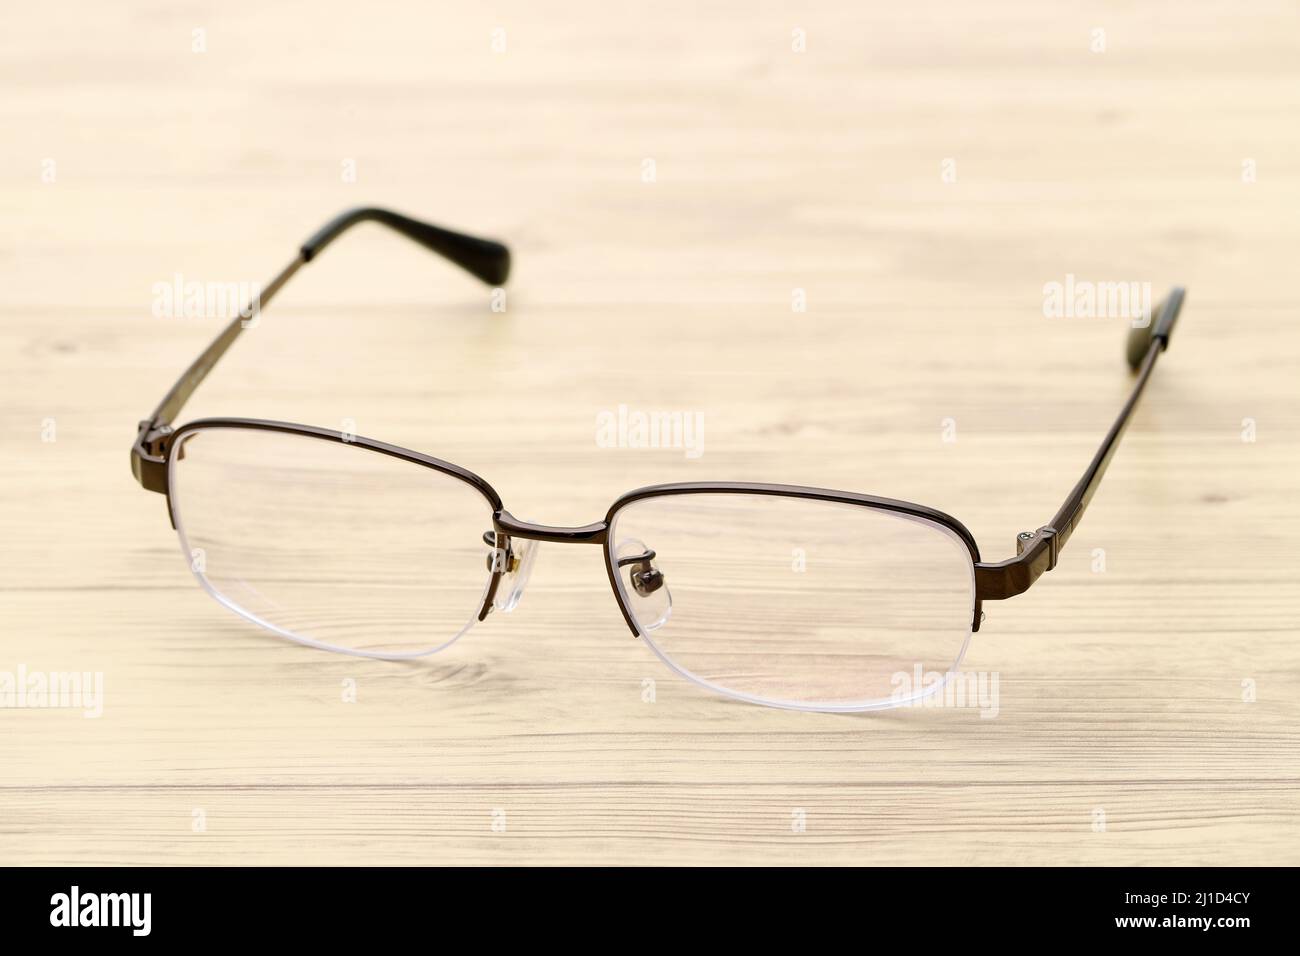 Stylish eyesight glasses on wooden table Stock Photo